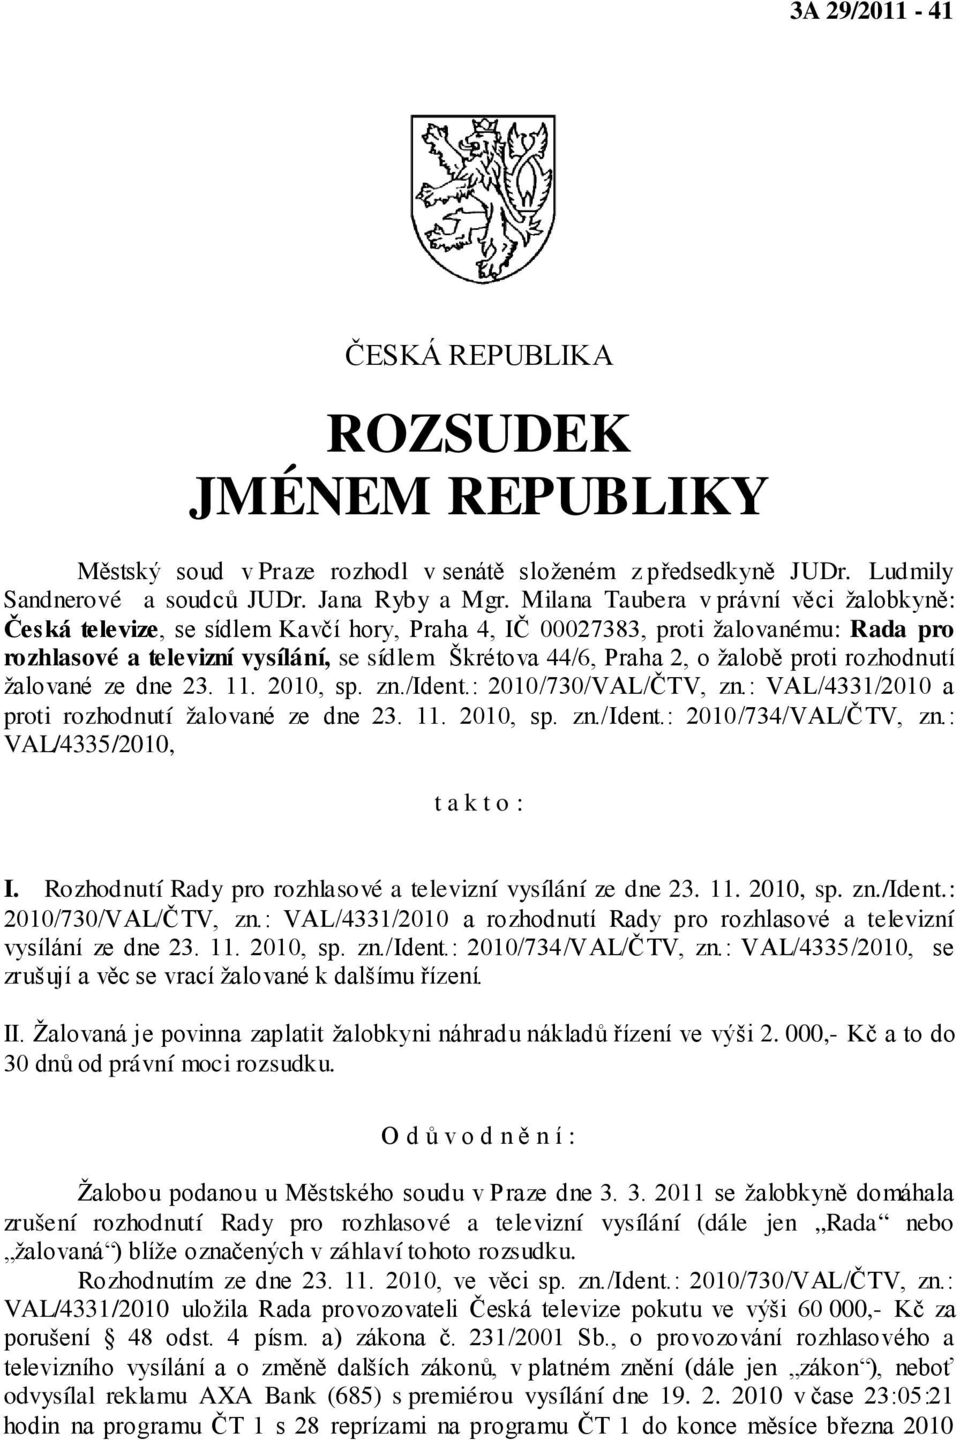 žalobě proti rozhodnutí žalované ze dne 23. 11. 2010, sp. zn./ident.: 2010/730/VAL/ČTV, zn.: VAL/4331/2010 a proti rozhodnutí žalované ze dne 23. 11. 2010, sp. zn./ident.: 2010/734/VAL/ČTV, zn.